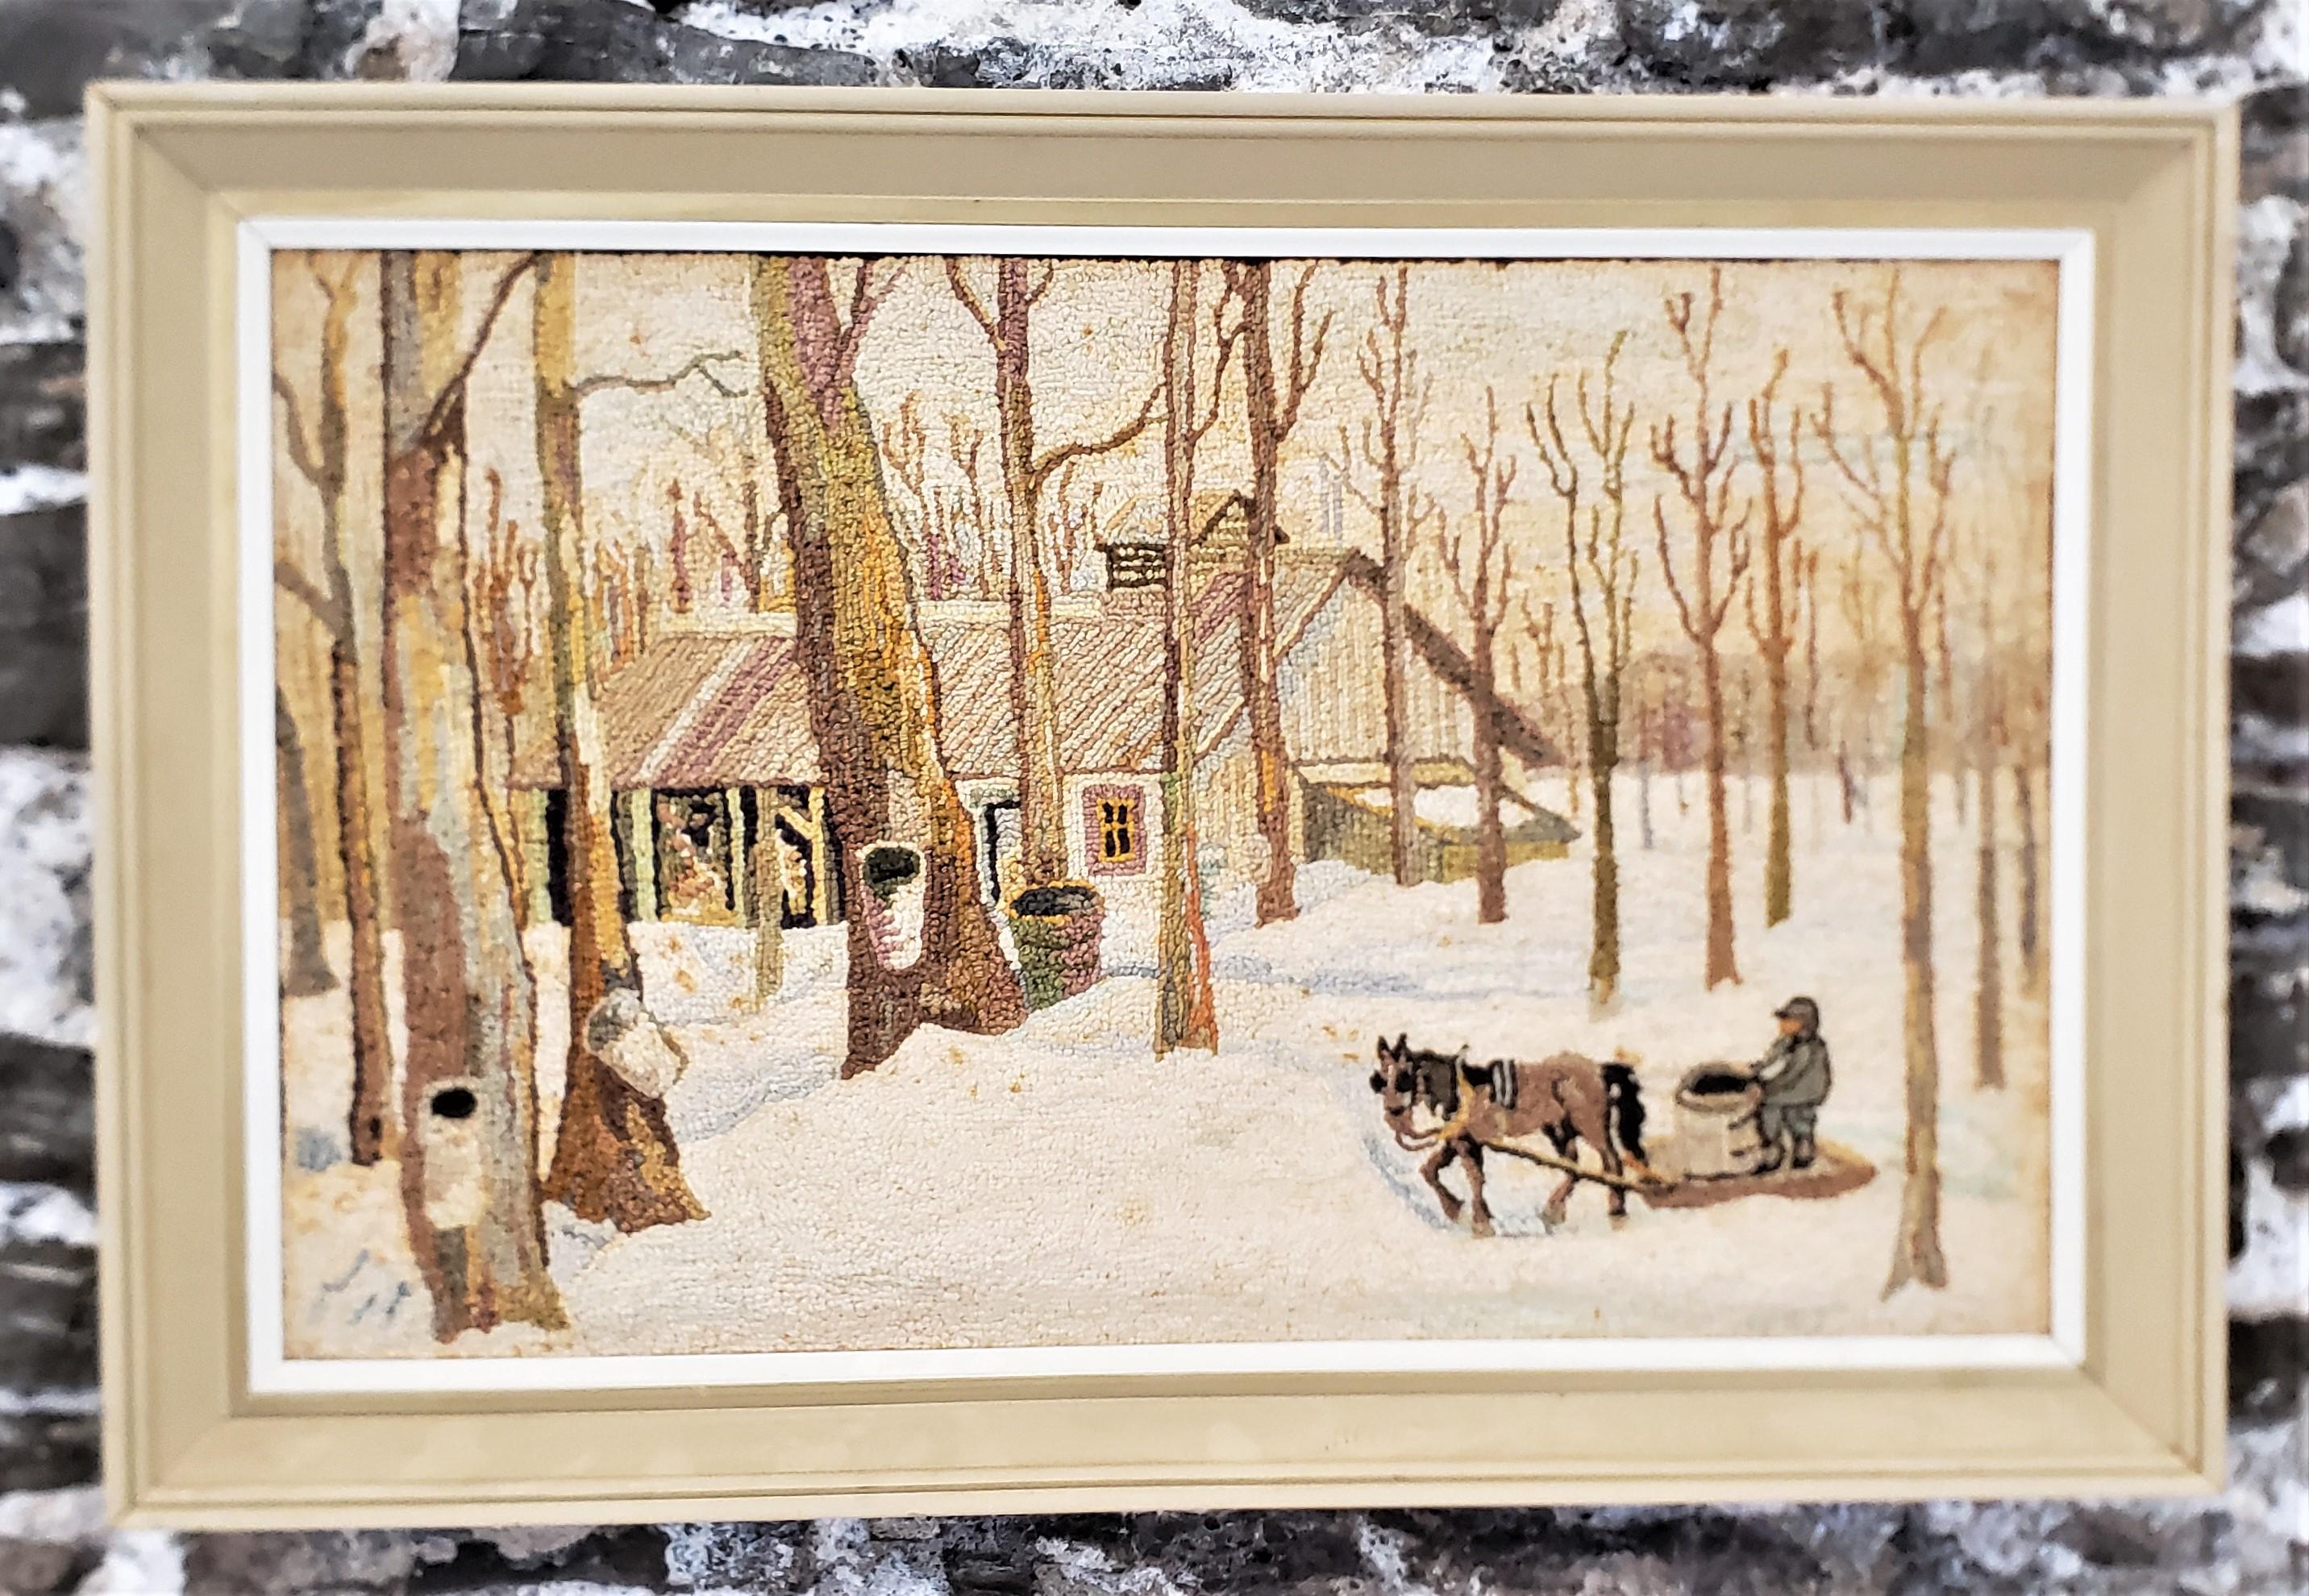 Ce tapis crocheté encadré est attribué au célèbre artiste George Edouard Tremblay du Québec (Canada). Il date d'environ 1940 et a été réalisé dans le style Folk Art de l'époque. Le tapis ou la natte est fait de laine sur de la toile de jute qui a